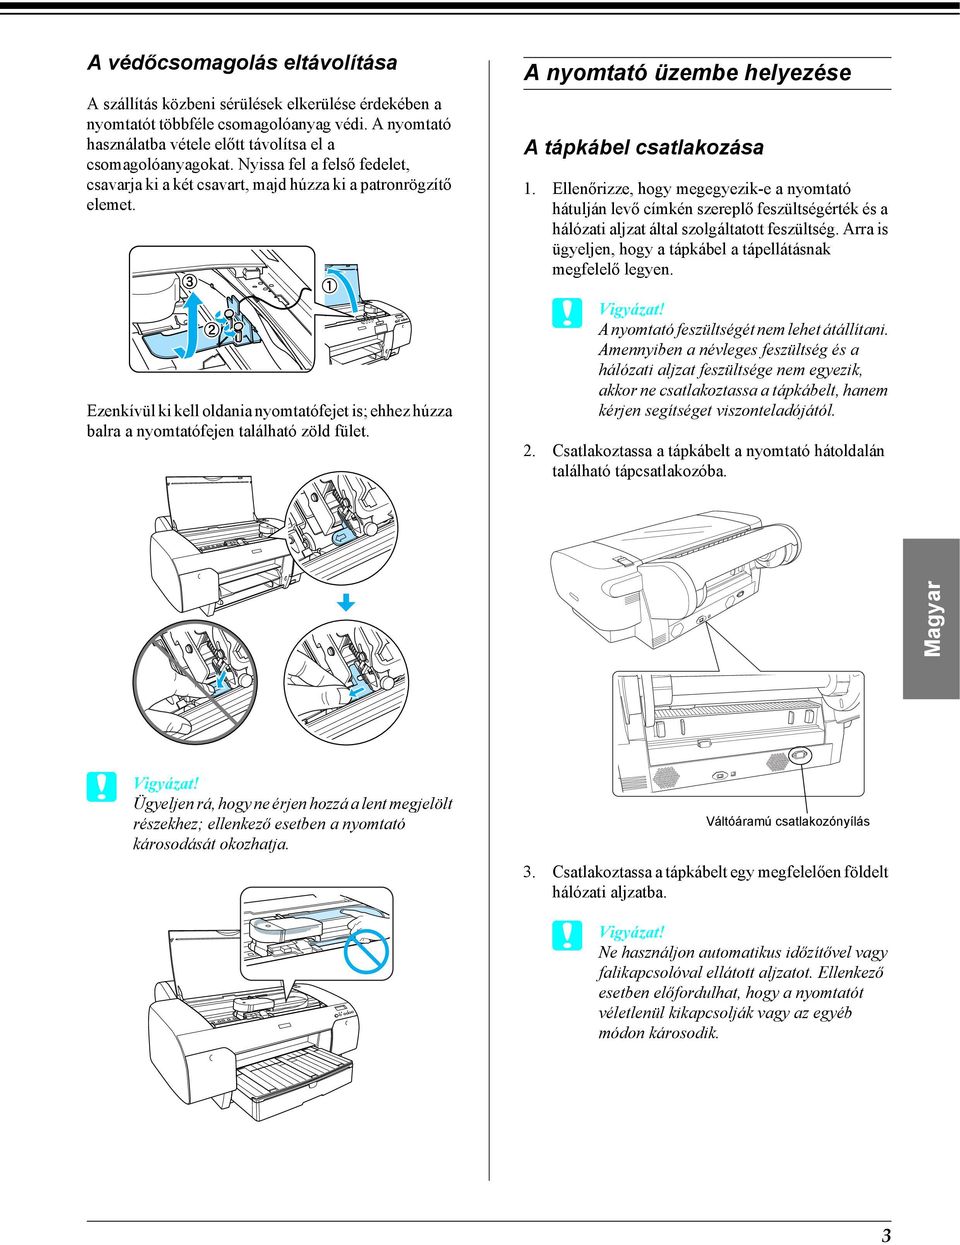 A nyomtató üzembe helyezése A tápkábel csatlakozása 1. Ellenőrizze, hogy megegyezik-e a nyomtató hátulján levő címkén szereplő feszültségérték és a hálózati aljzat által szolgáltatott feszültség.